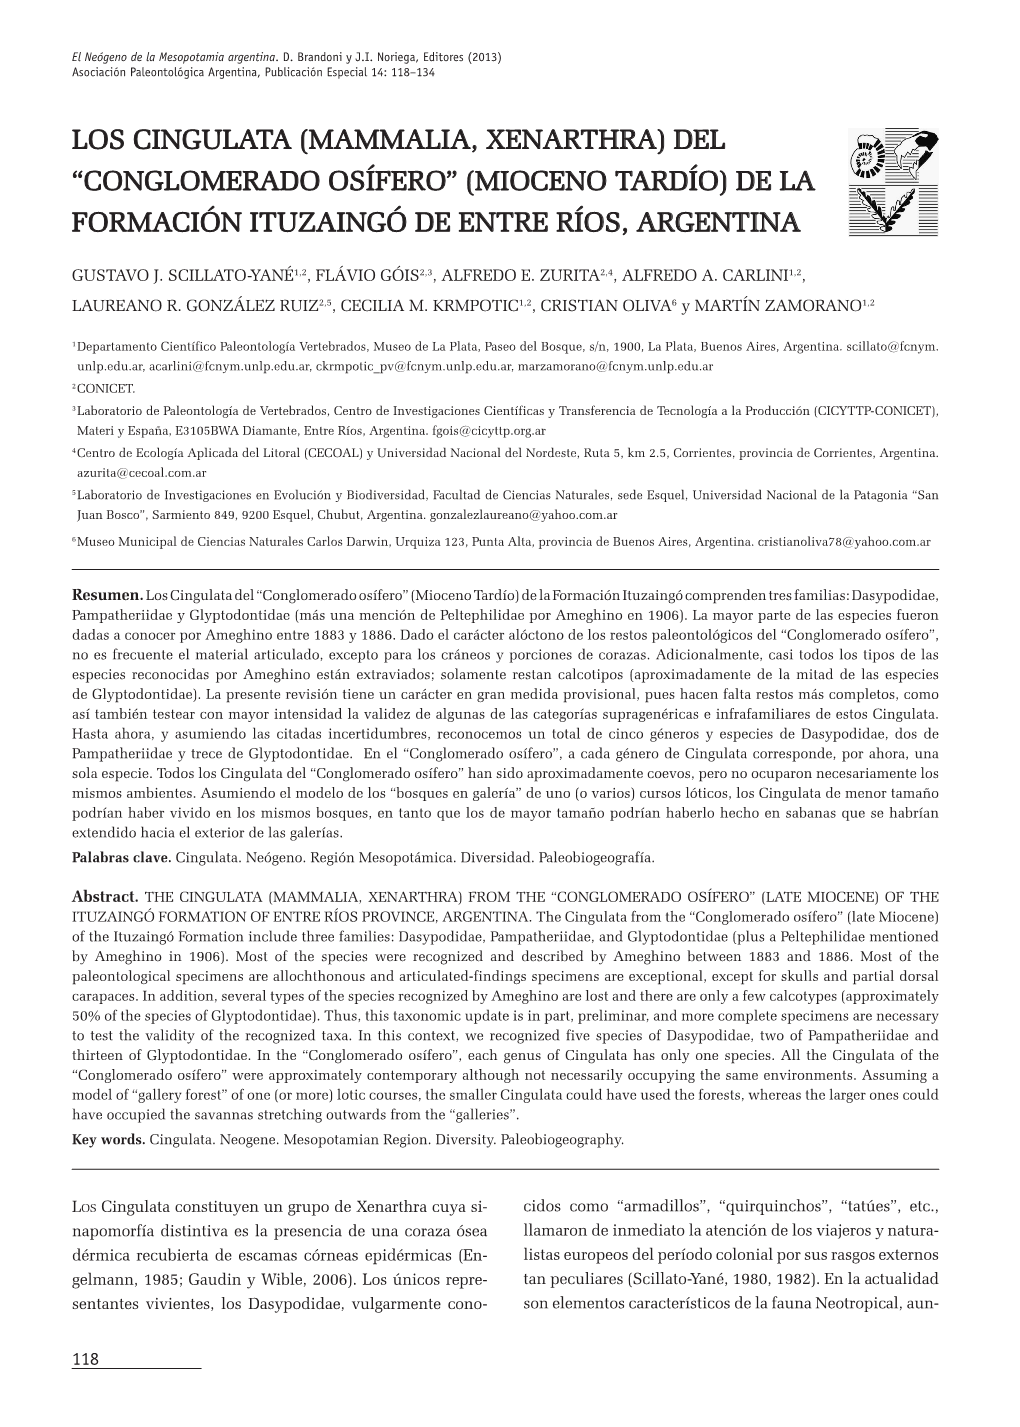 Los Cingulata (Mammalia, Xenarthra) Del “Conglomerado Osífero” (Mioceno Tardío) De La Formación Ituzaingó De Entre Ríos, Argentina